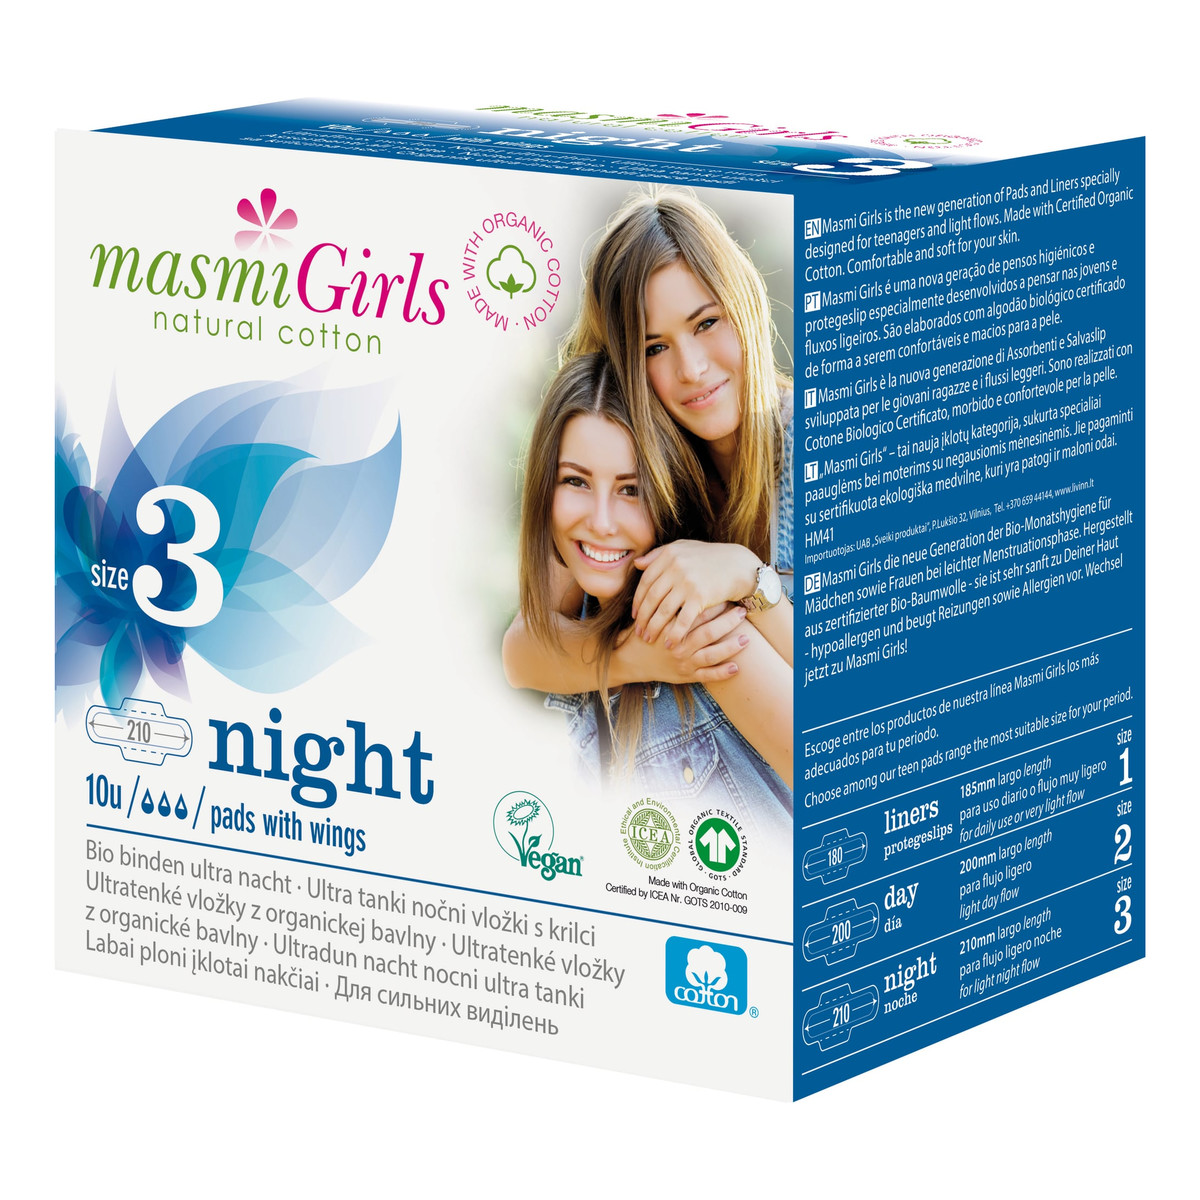 MASMI Girls podpaski na noc 100% bawełny organicznej 10 szt